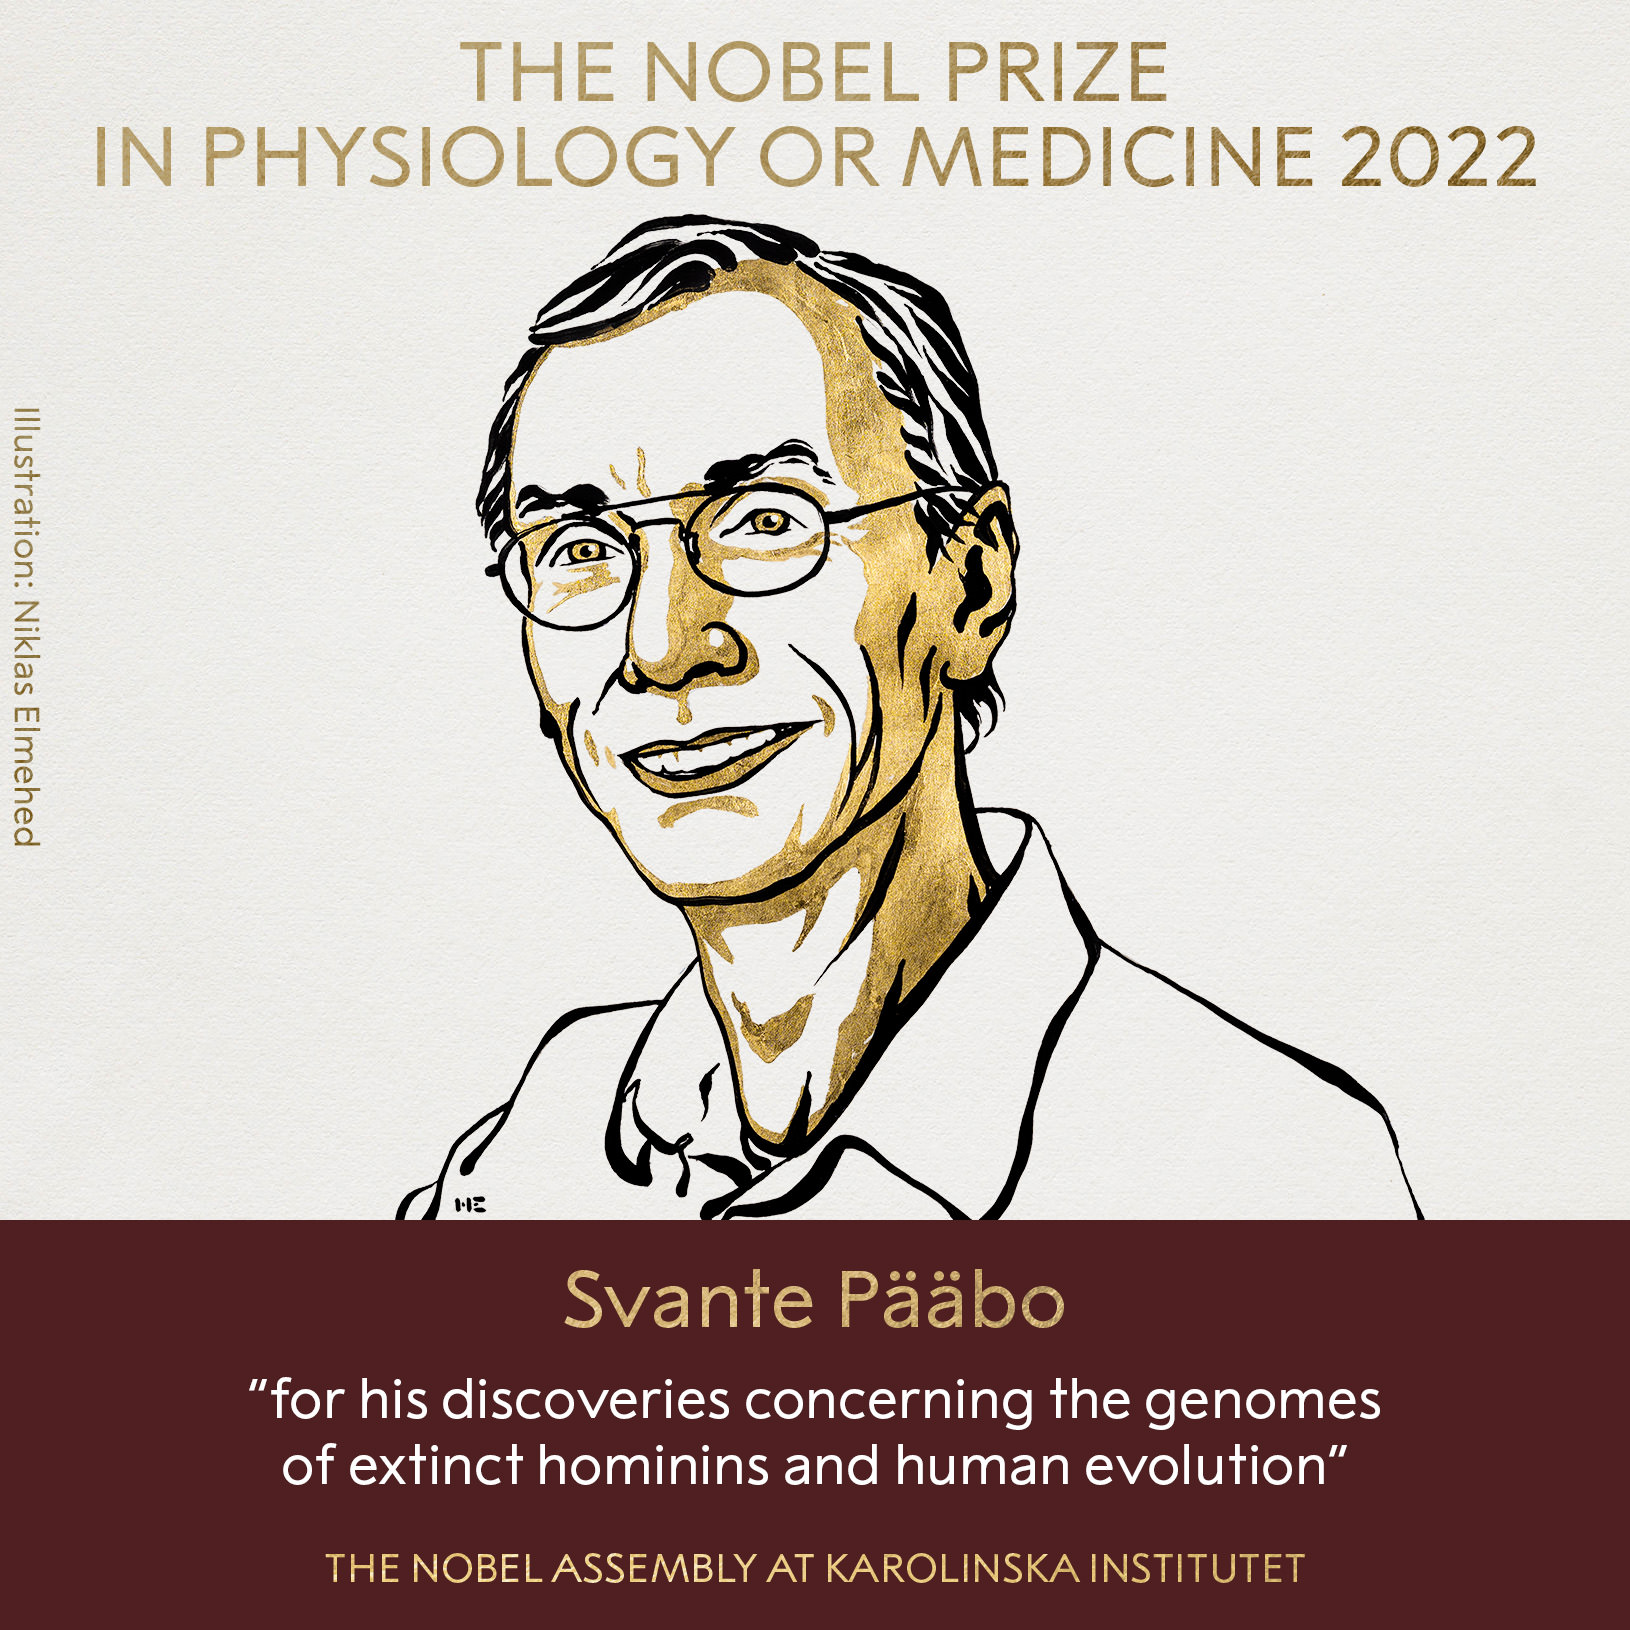 سوانته پبو برنده جایزه نوبل فیزیولوژی یا پزشکی ۲۰۲۲